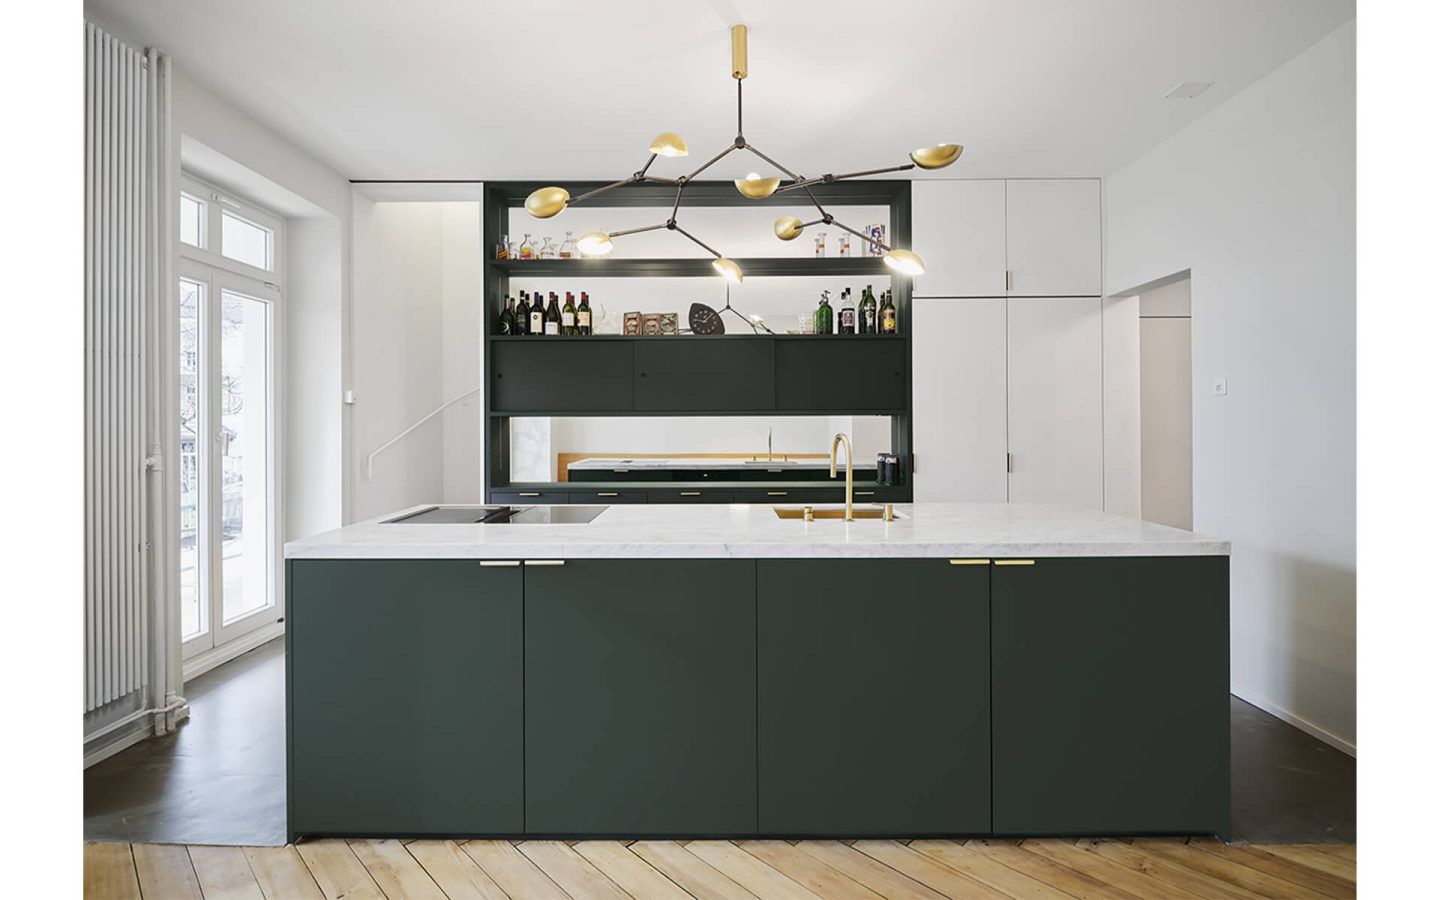 Die neue Küche in dunkelgrünem Linoleum und mit einer Marmorabdeckung setzt den Akzent für die ganze Wohnung.